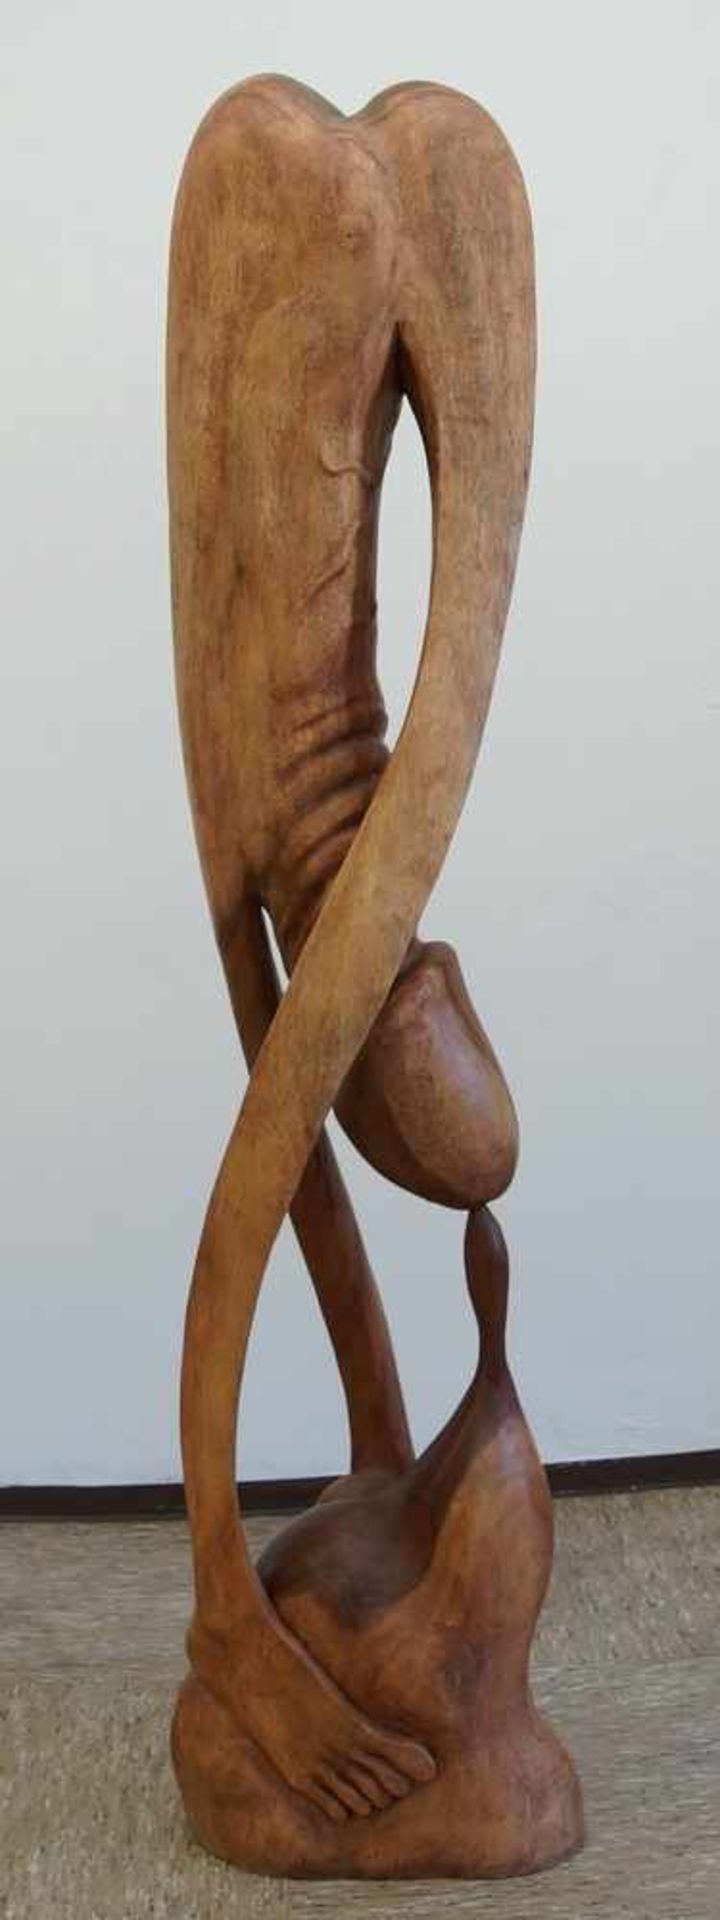 Grosser, in Holz geschnitzter Phallus in abstrakter Darstellung, H 170 cm - Bild 5 aus 6